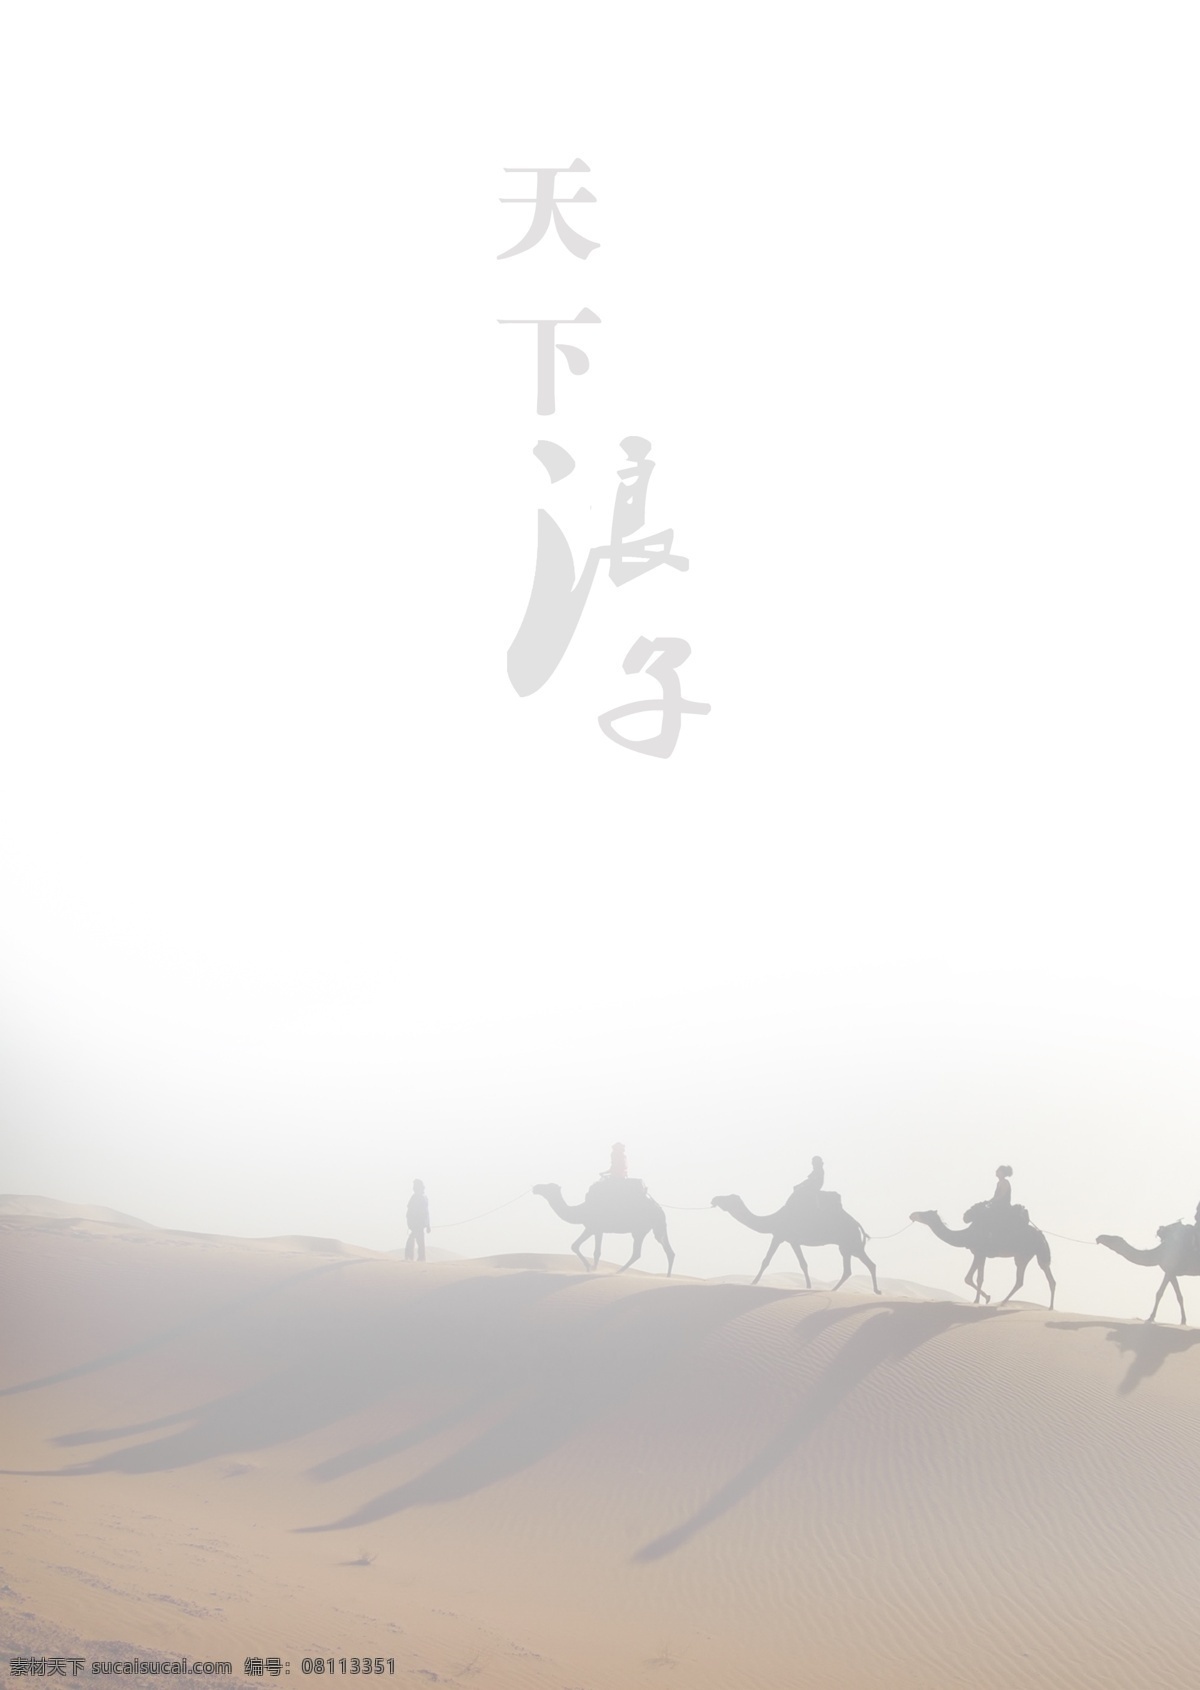 天下 浪子 之心 分层 封面 画册 画册封面 骆驼 沙漠 山 设计图 天下浪子 原创设计 原创画册